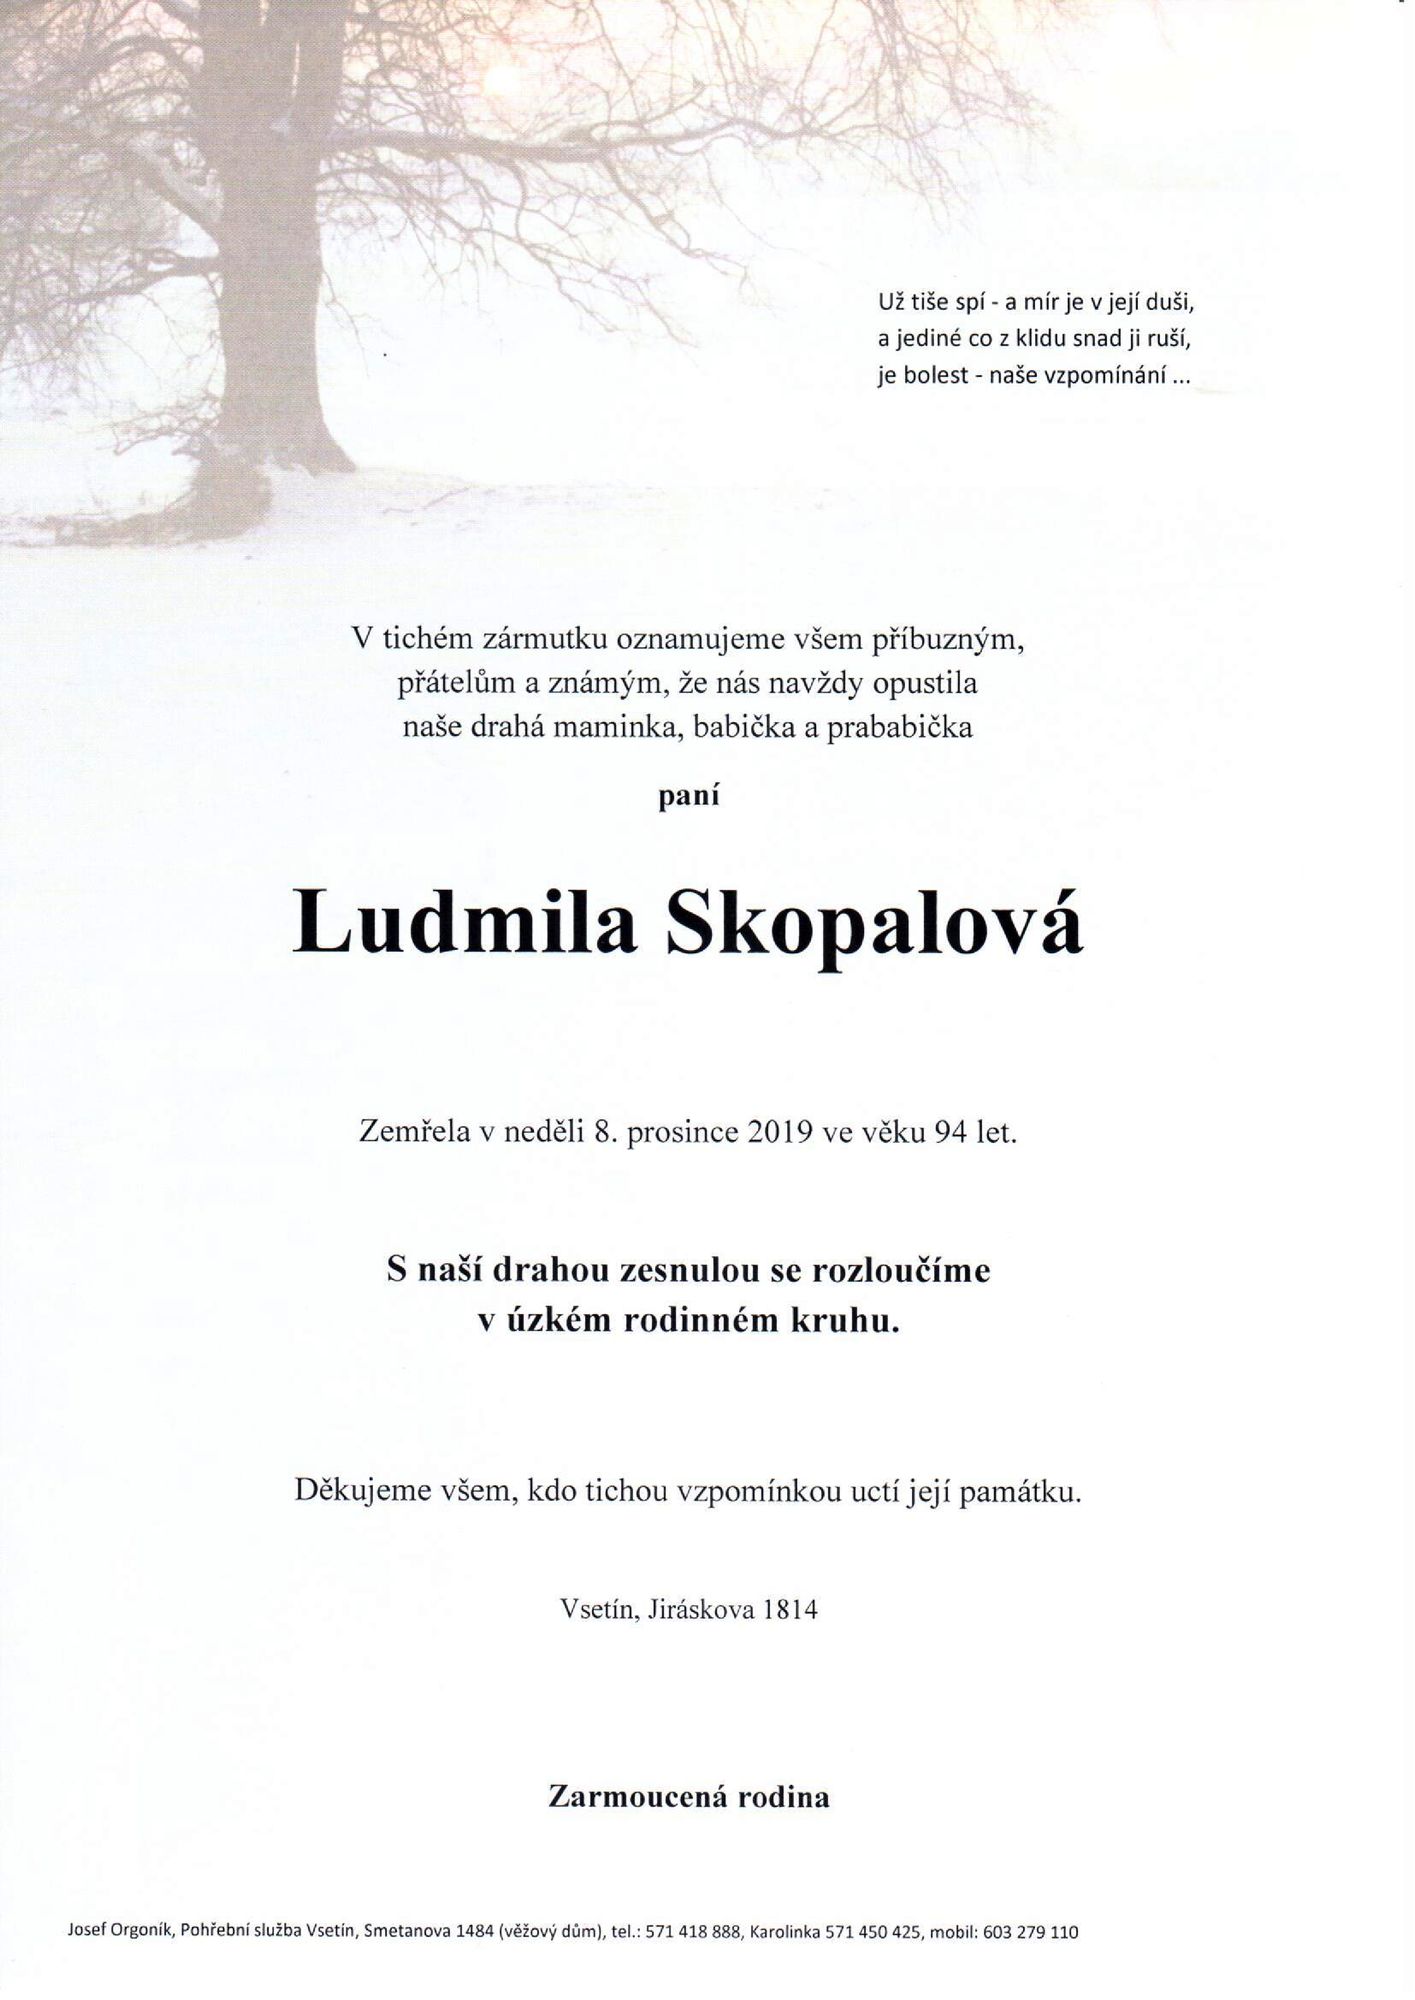 Ludmila Skopalová